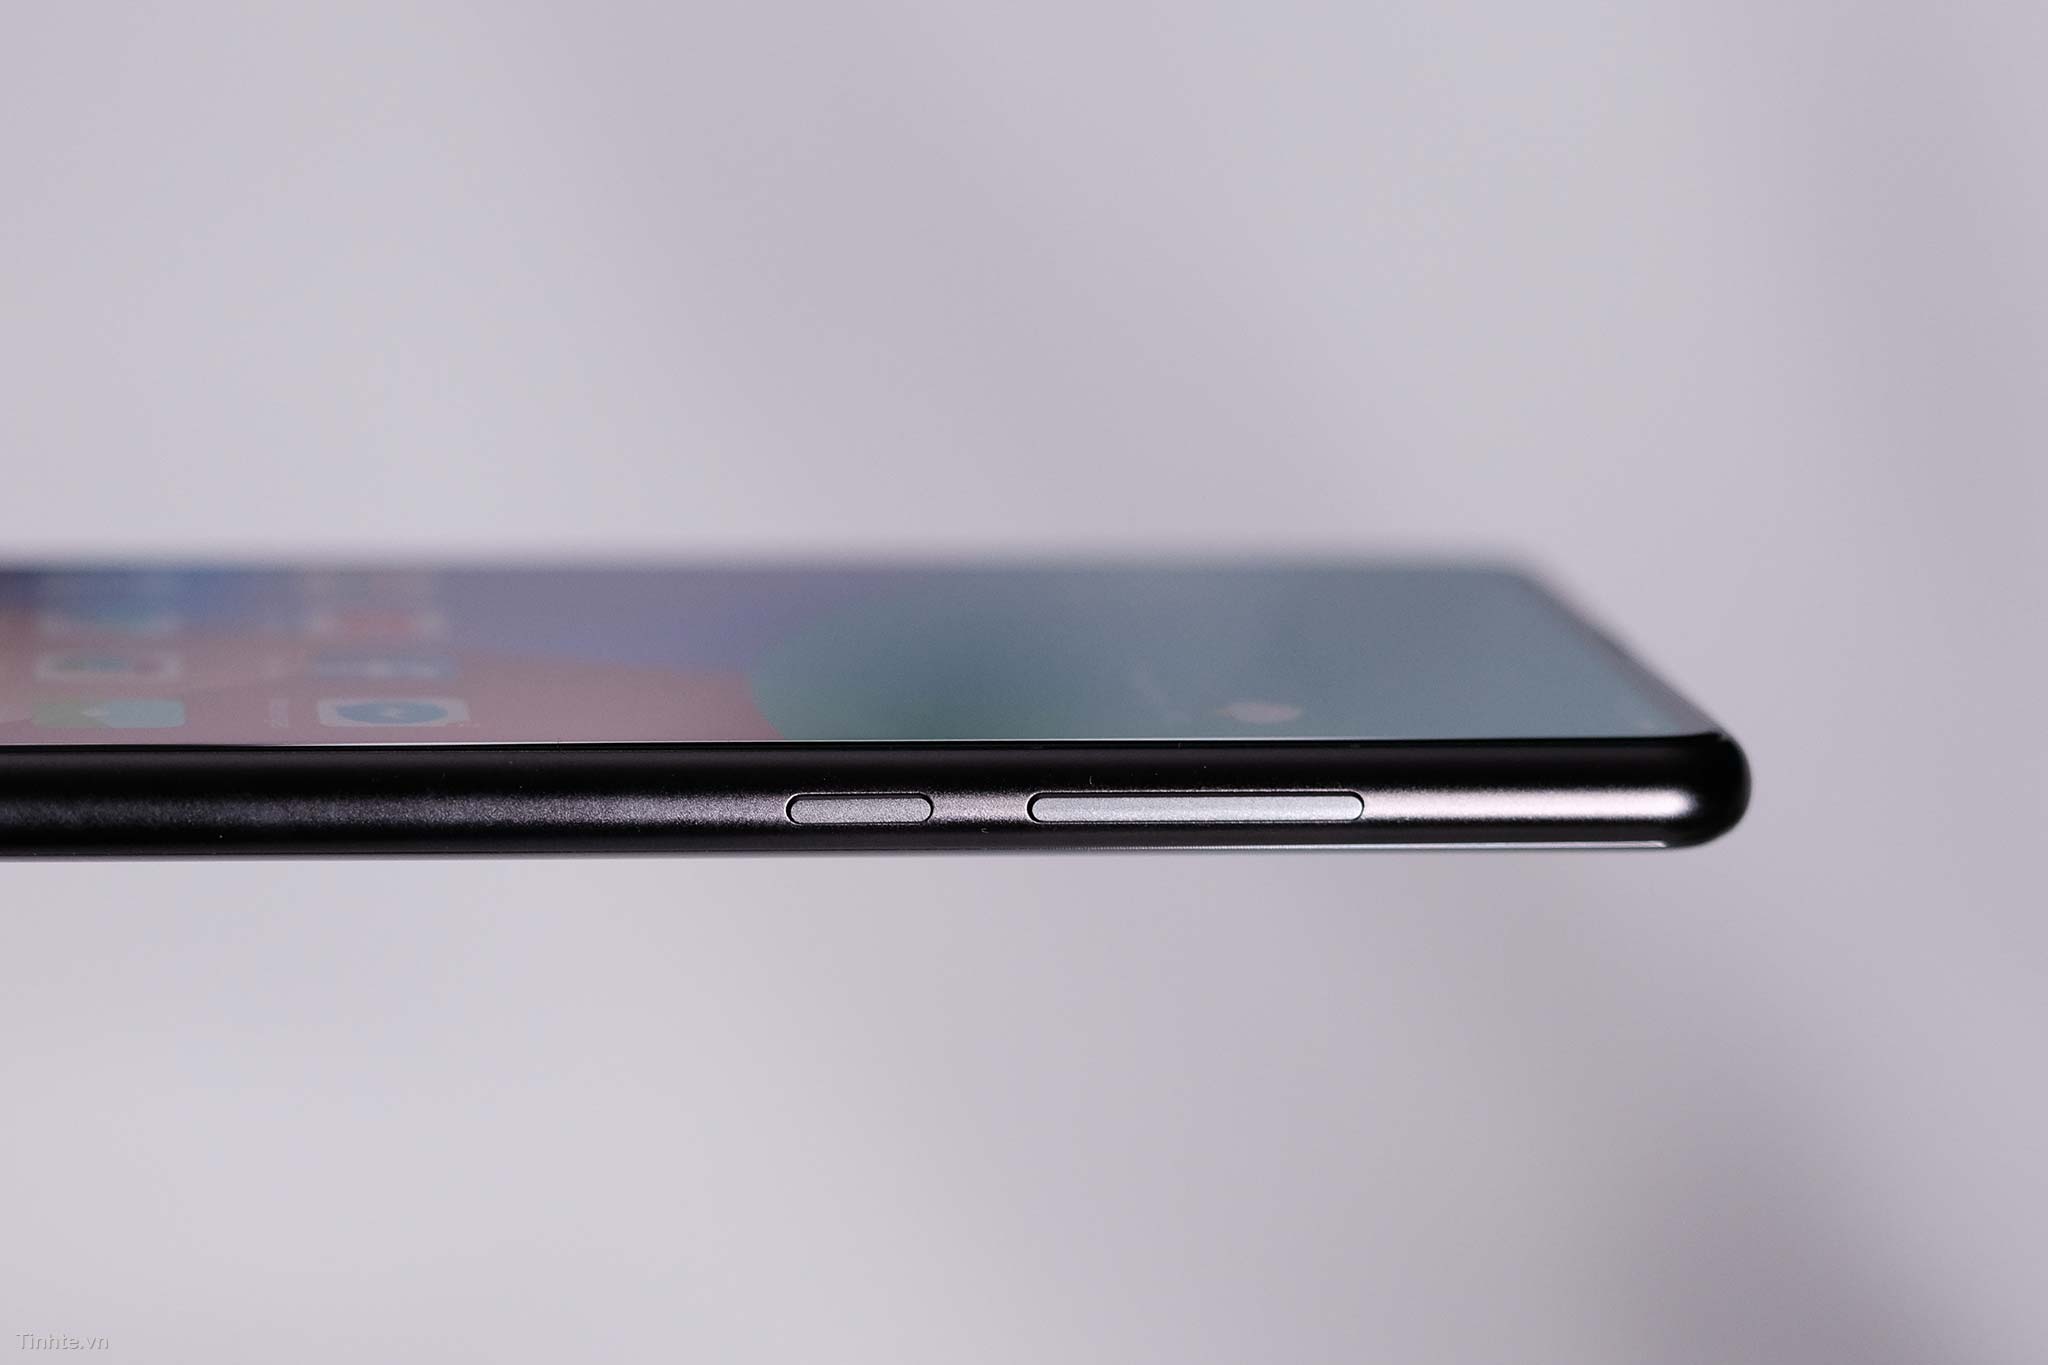 Trên tay Xiaomi Mi Mix 2 chính hãng VN: đẹp cân đối,
hoàn thiện tốt, giá rẻ